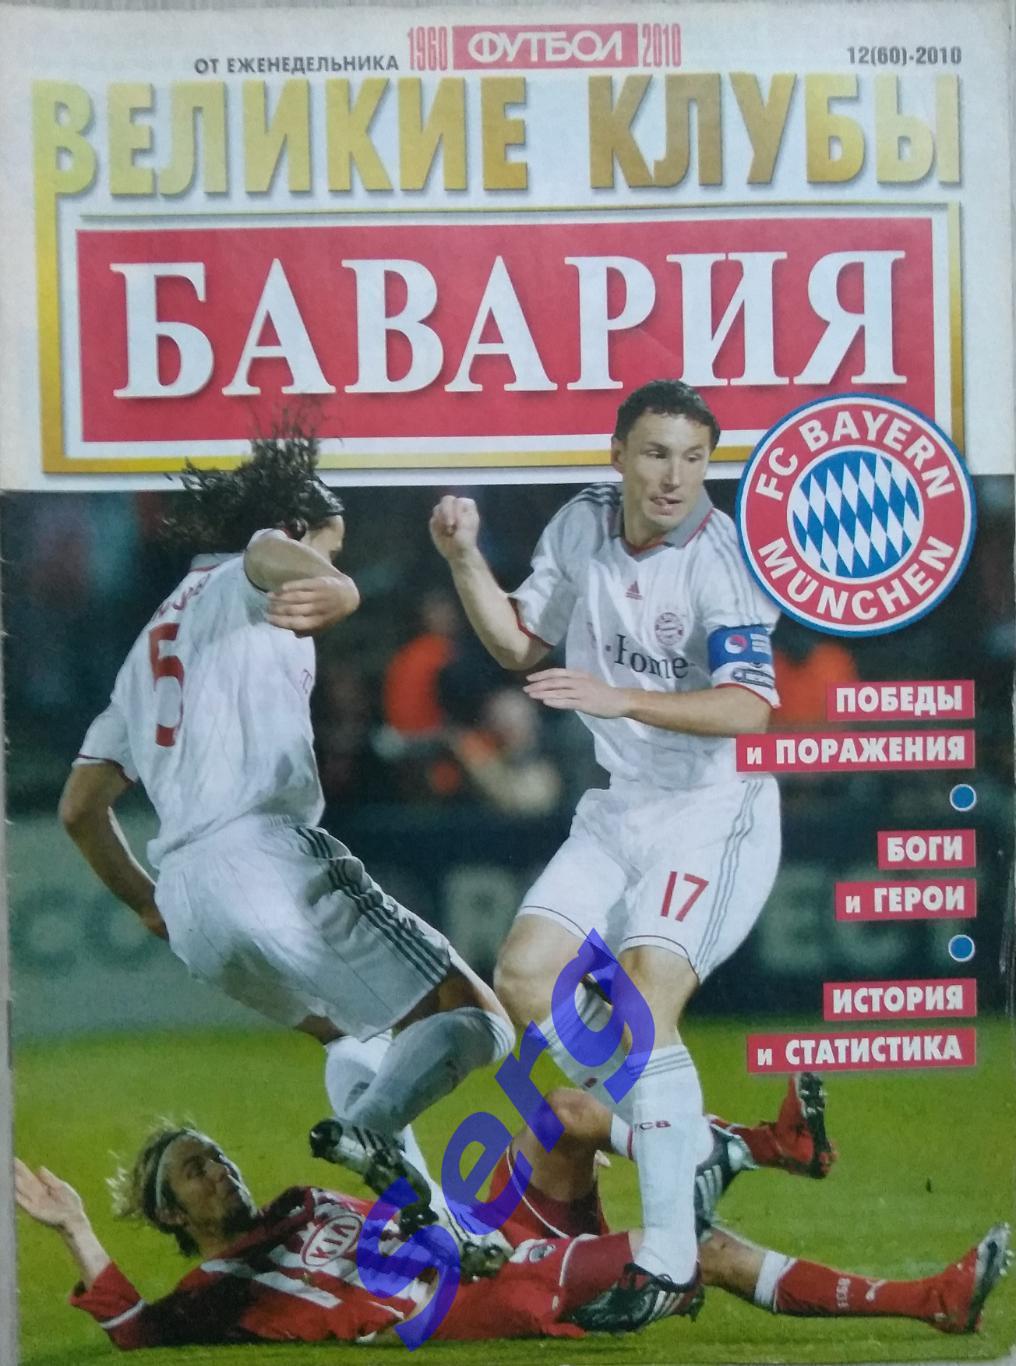 Спецвыпуск Великие клубы Бавария Мюнхен №12 2010 г. еженедельник Футбол